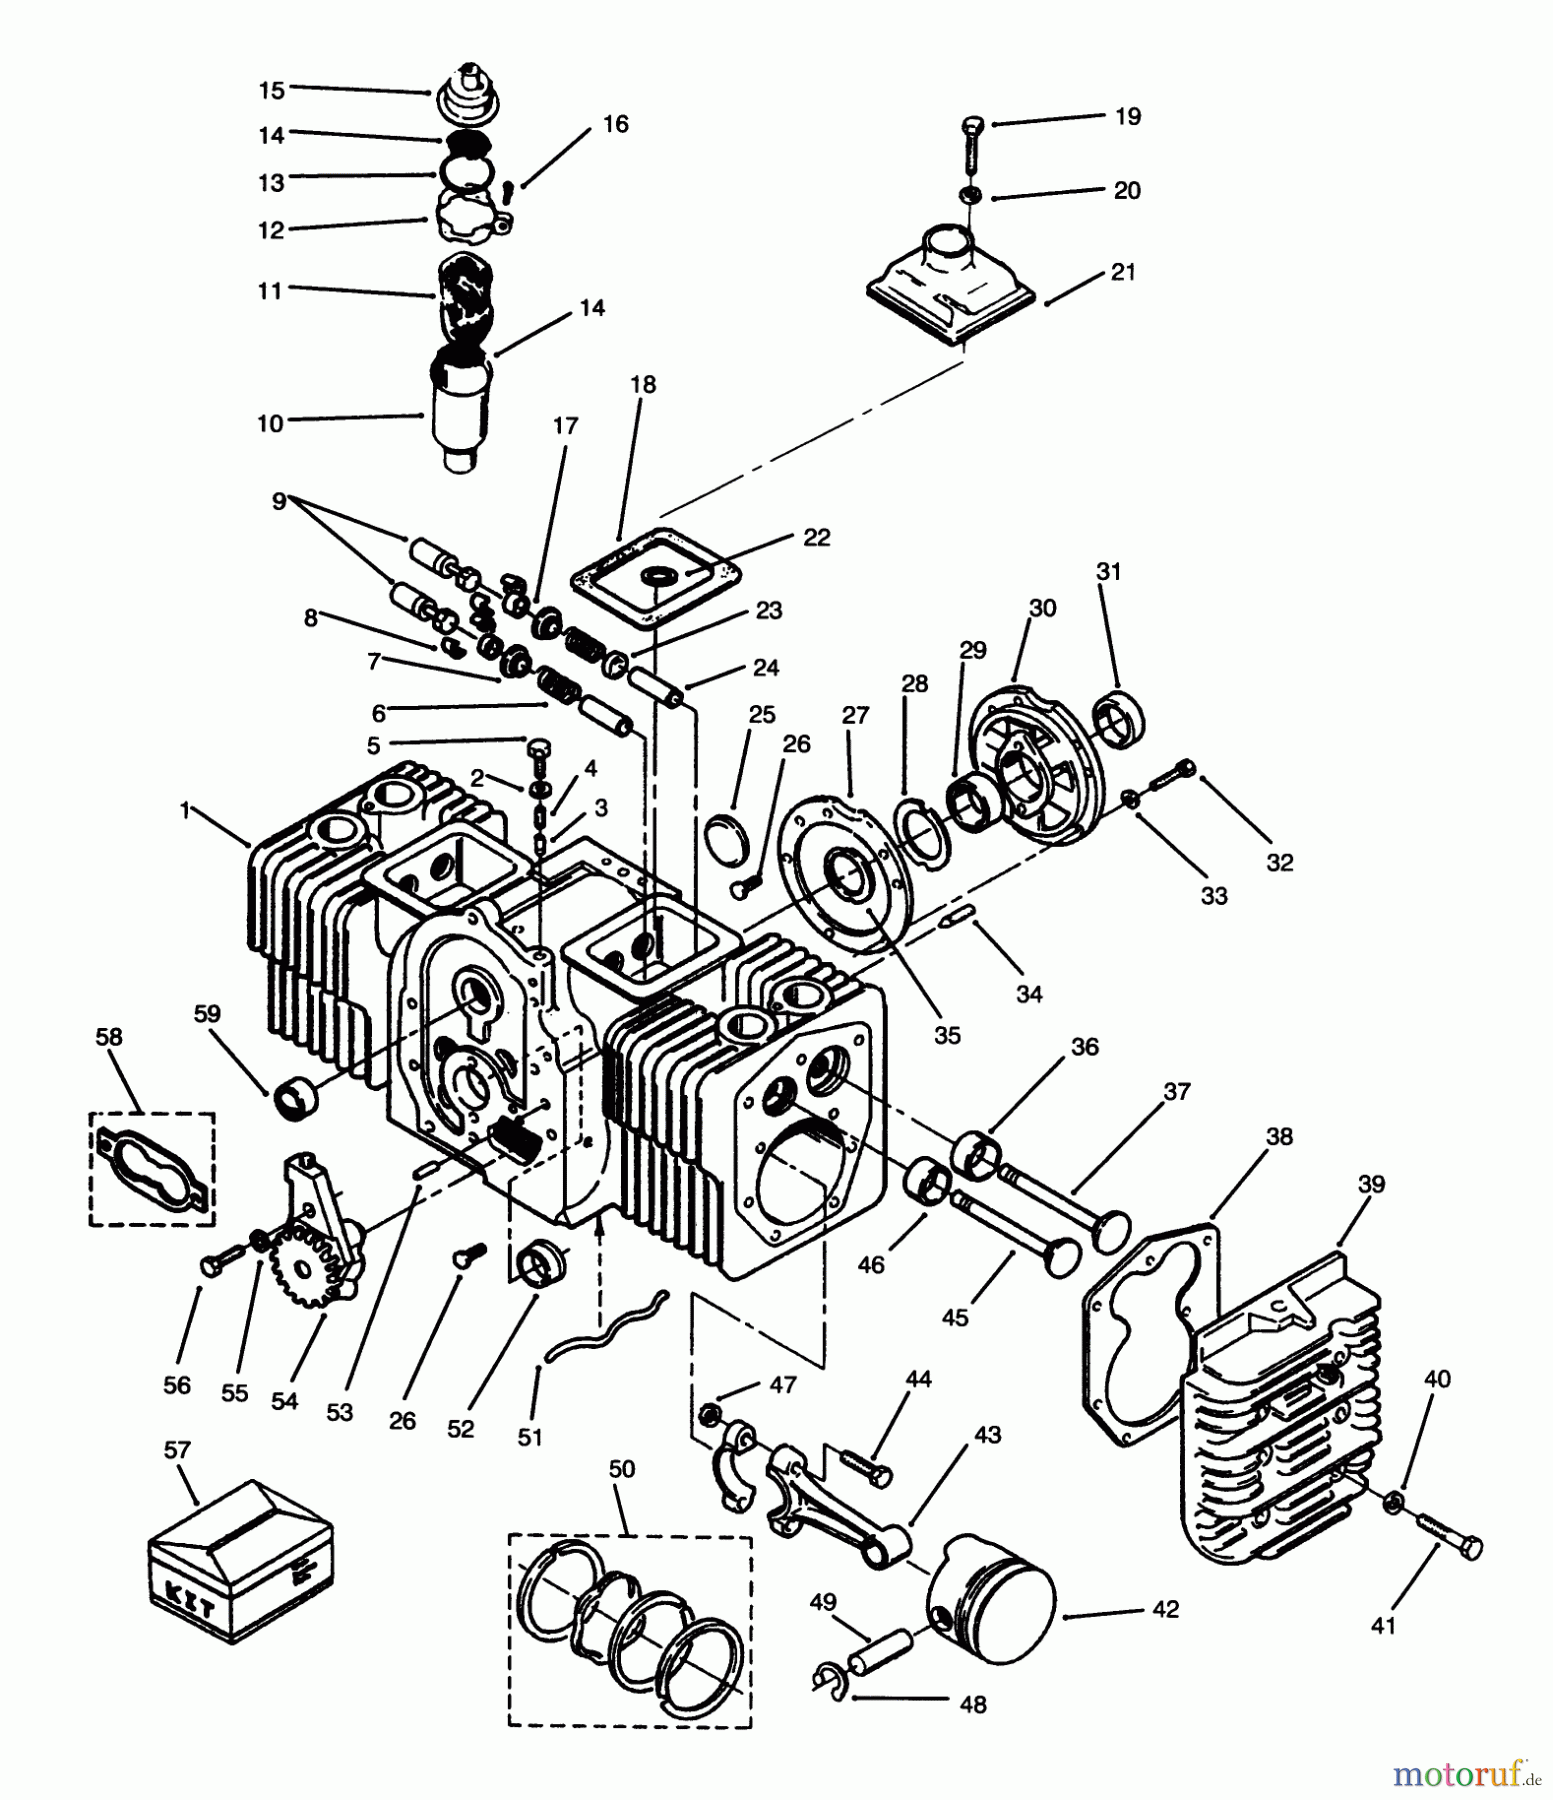  Toro Neu Mowers, Lawn & Garden Tractor Seite 1 73520 (520-H) - Toro 520-H Garden Tractor, 1995 (5900178-5999999) ENGINE CYLINDER BLOCK